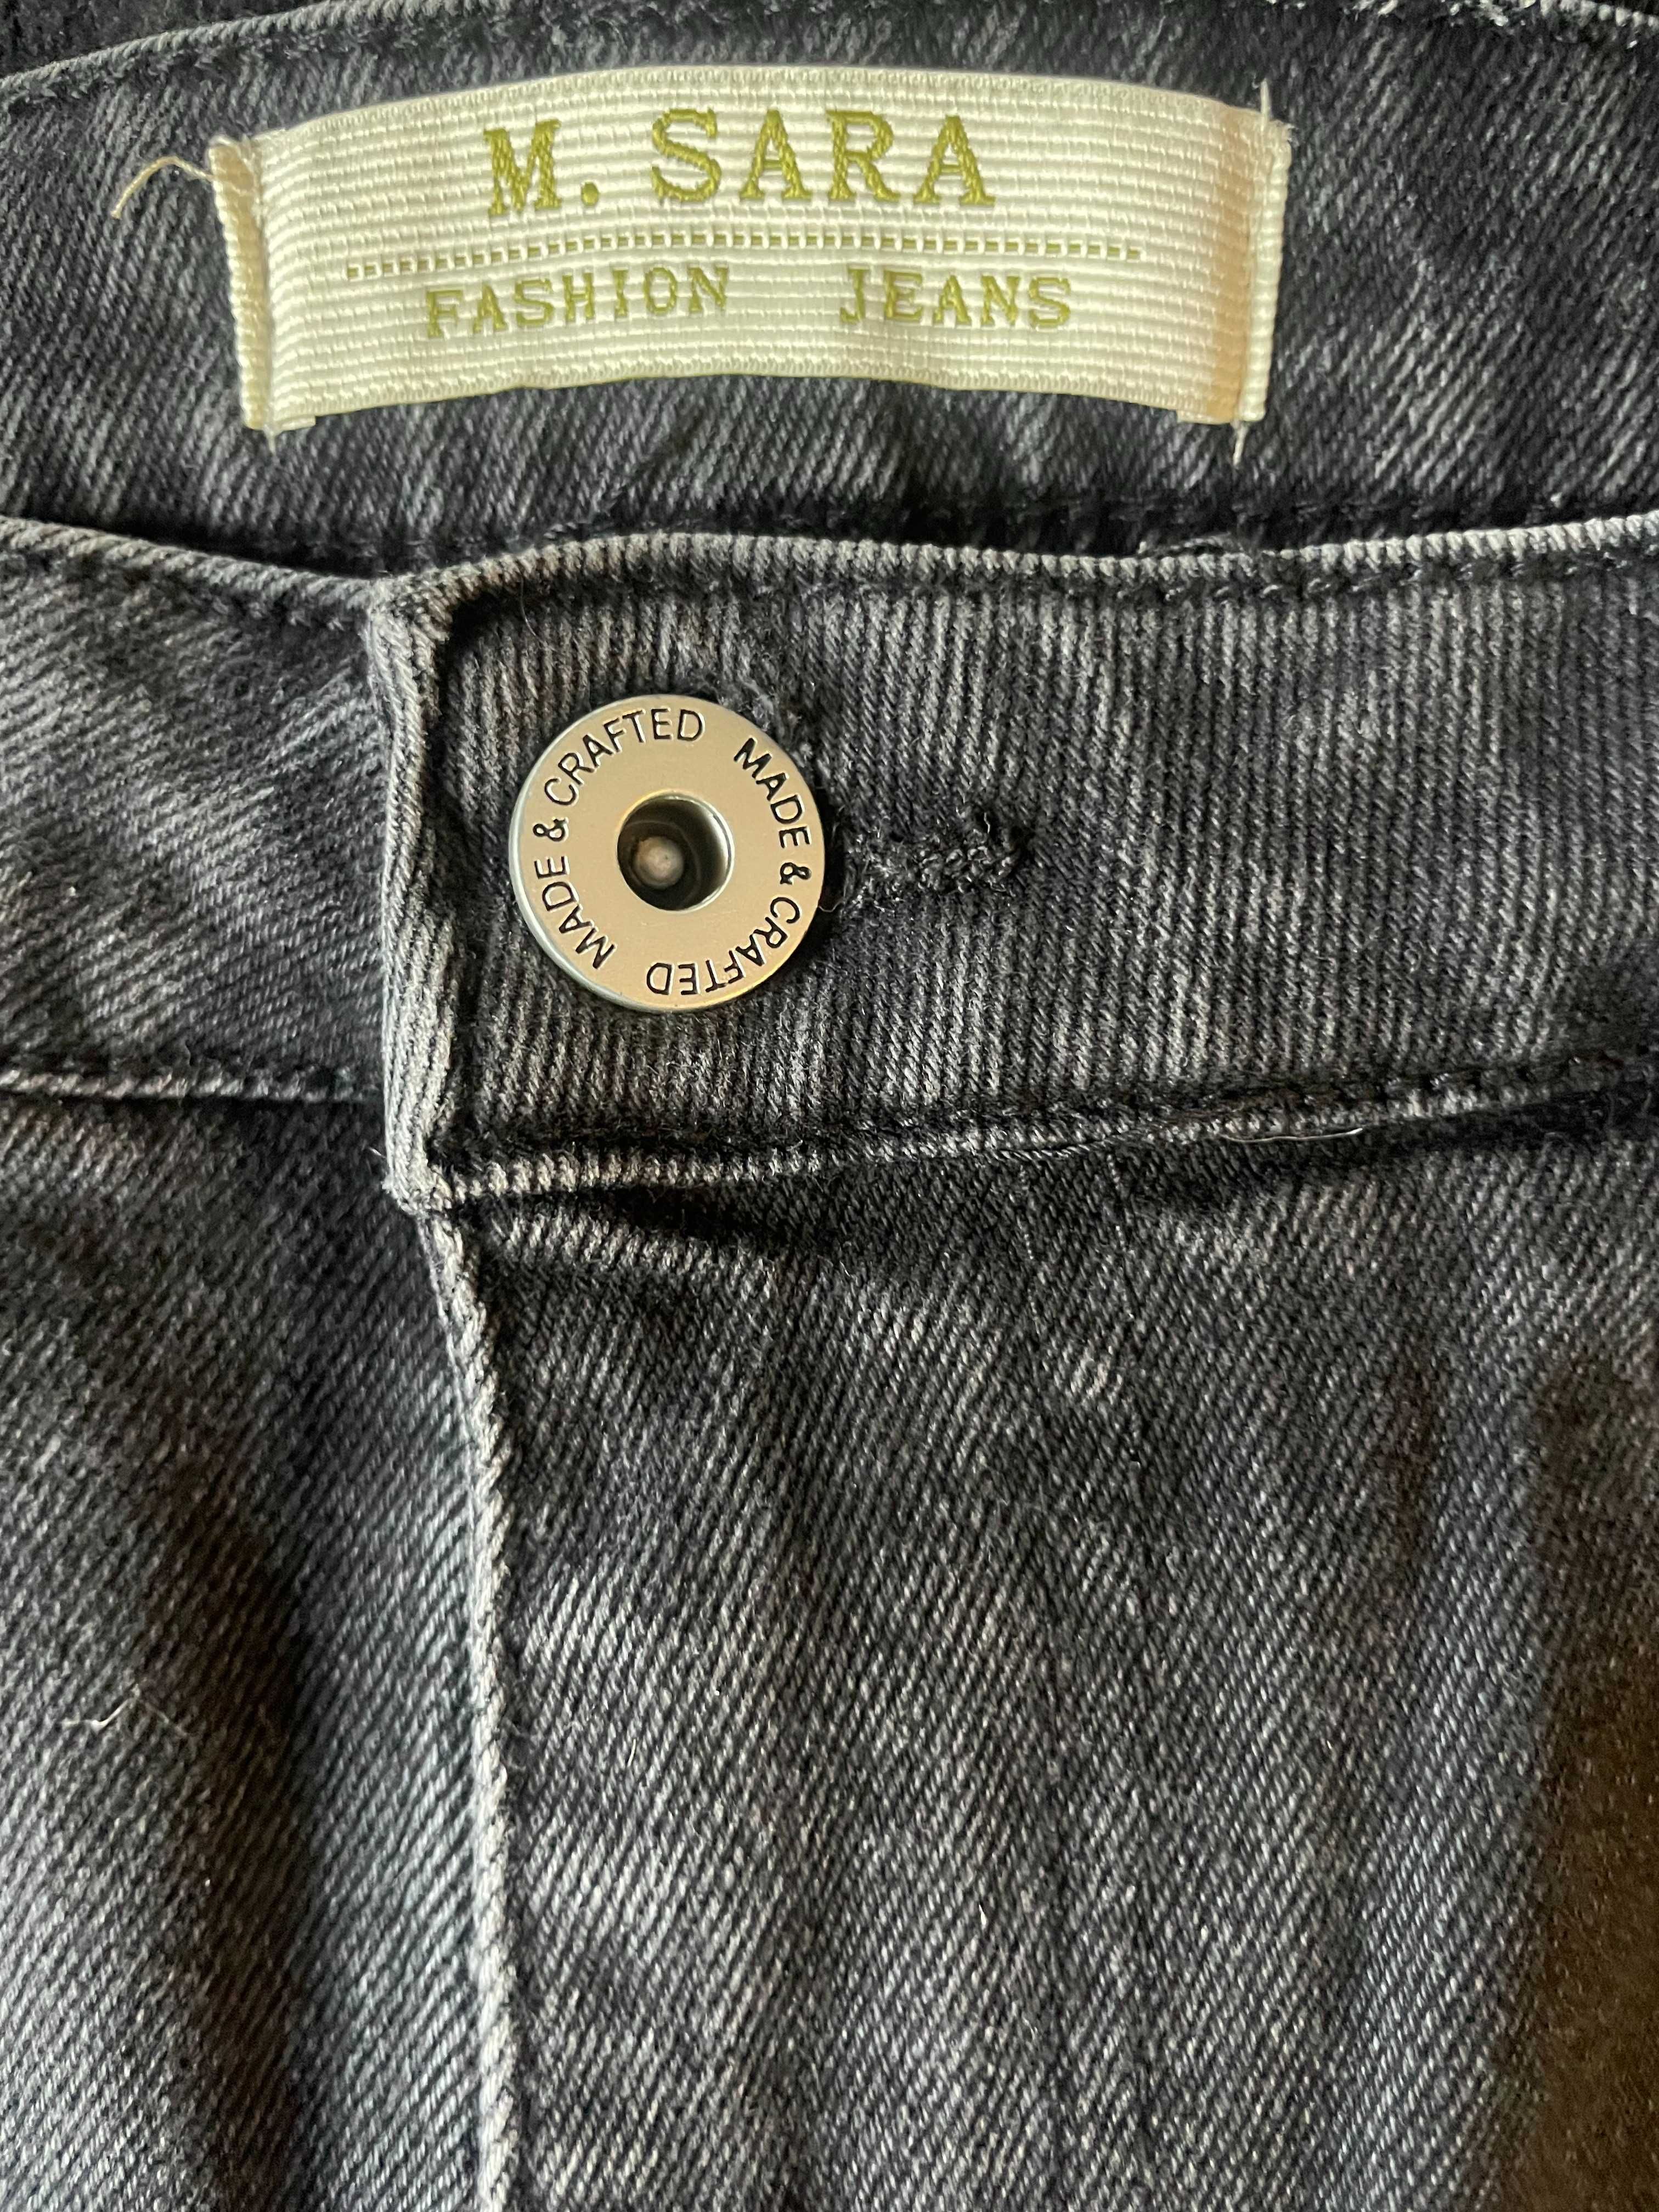 широкие джинсы М-Sara, размер М